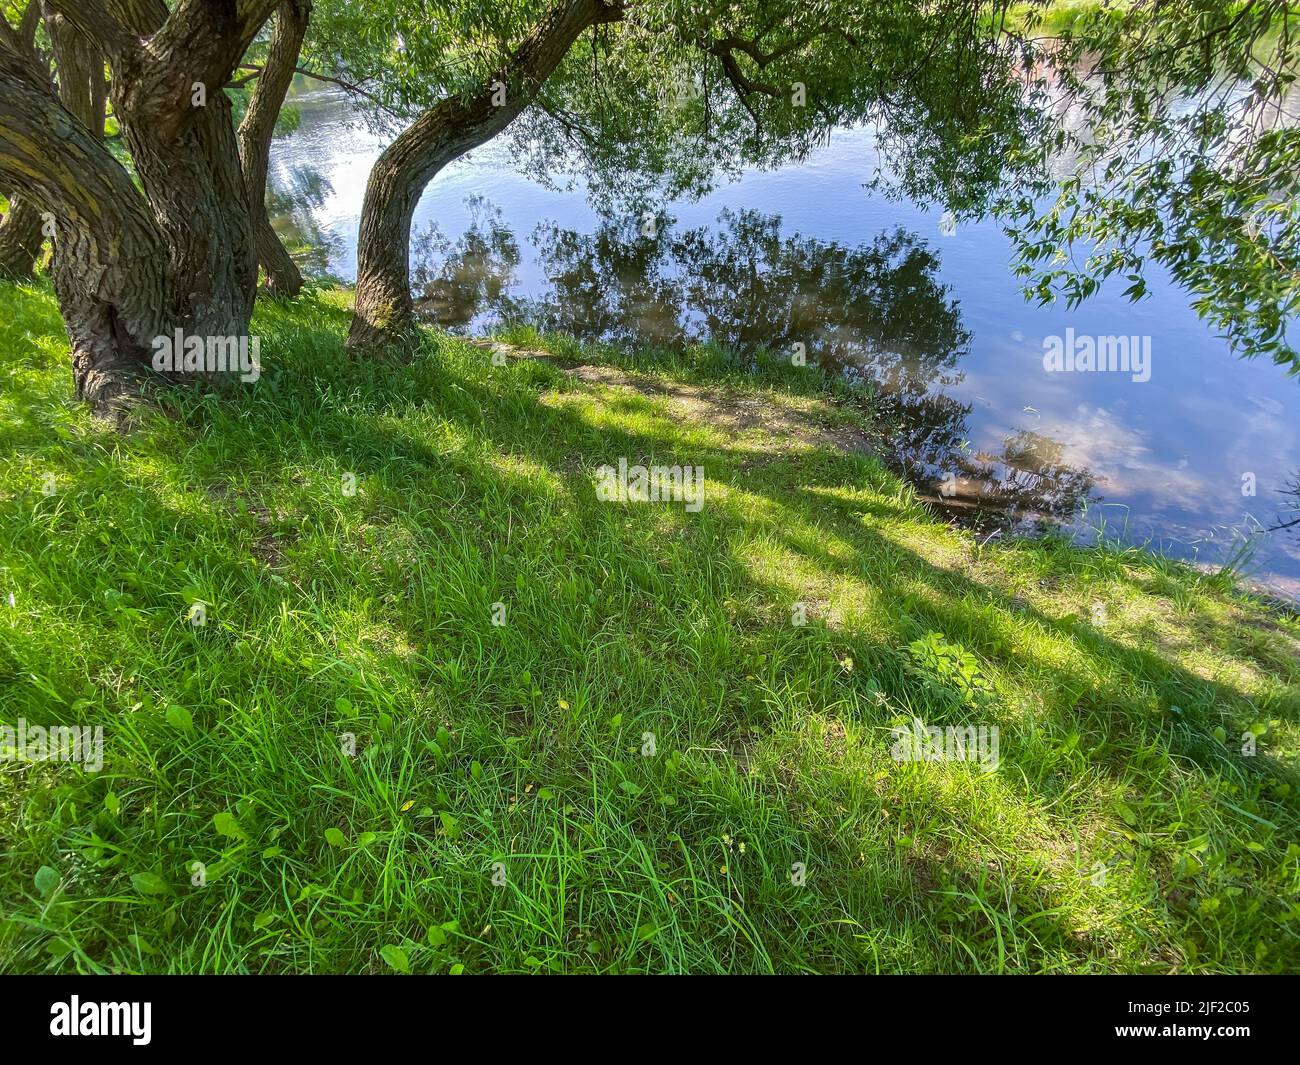 pintoresco paisaje de verano con un árbol a orillas del río y reflejos del cielo azul en el agua Foto de stock